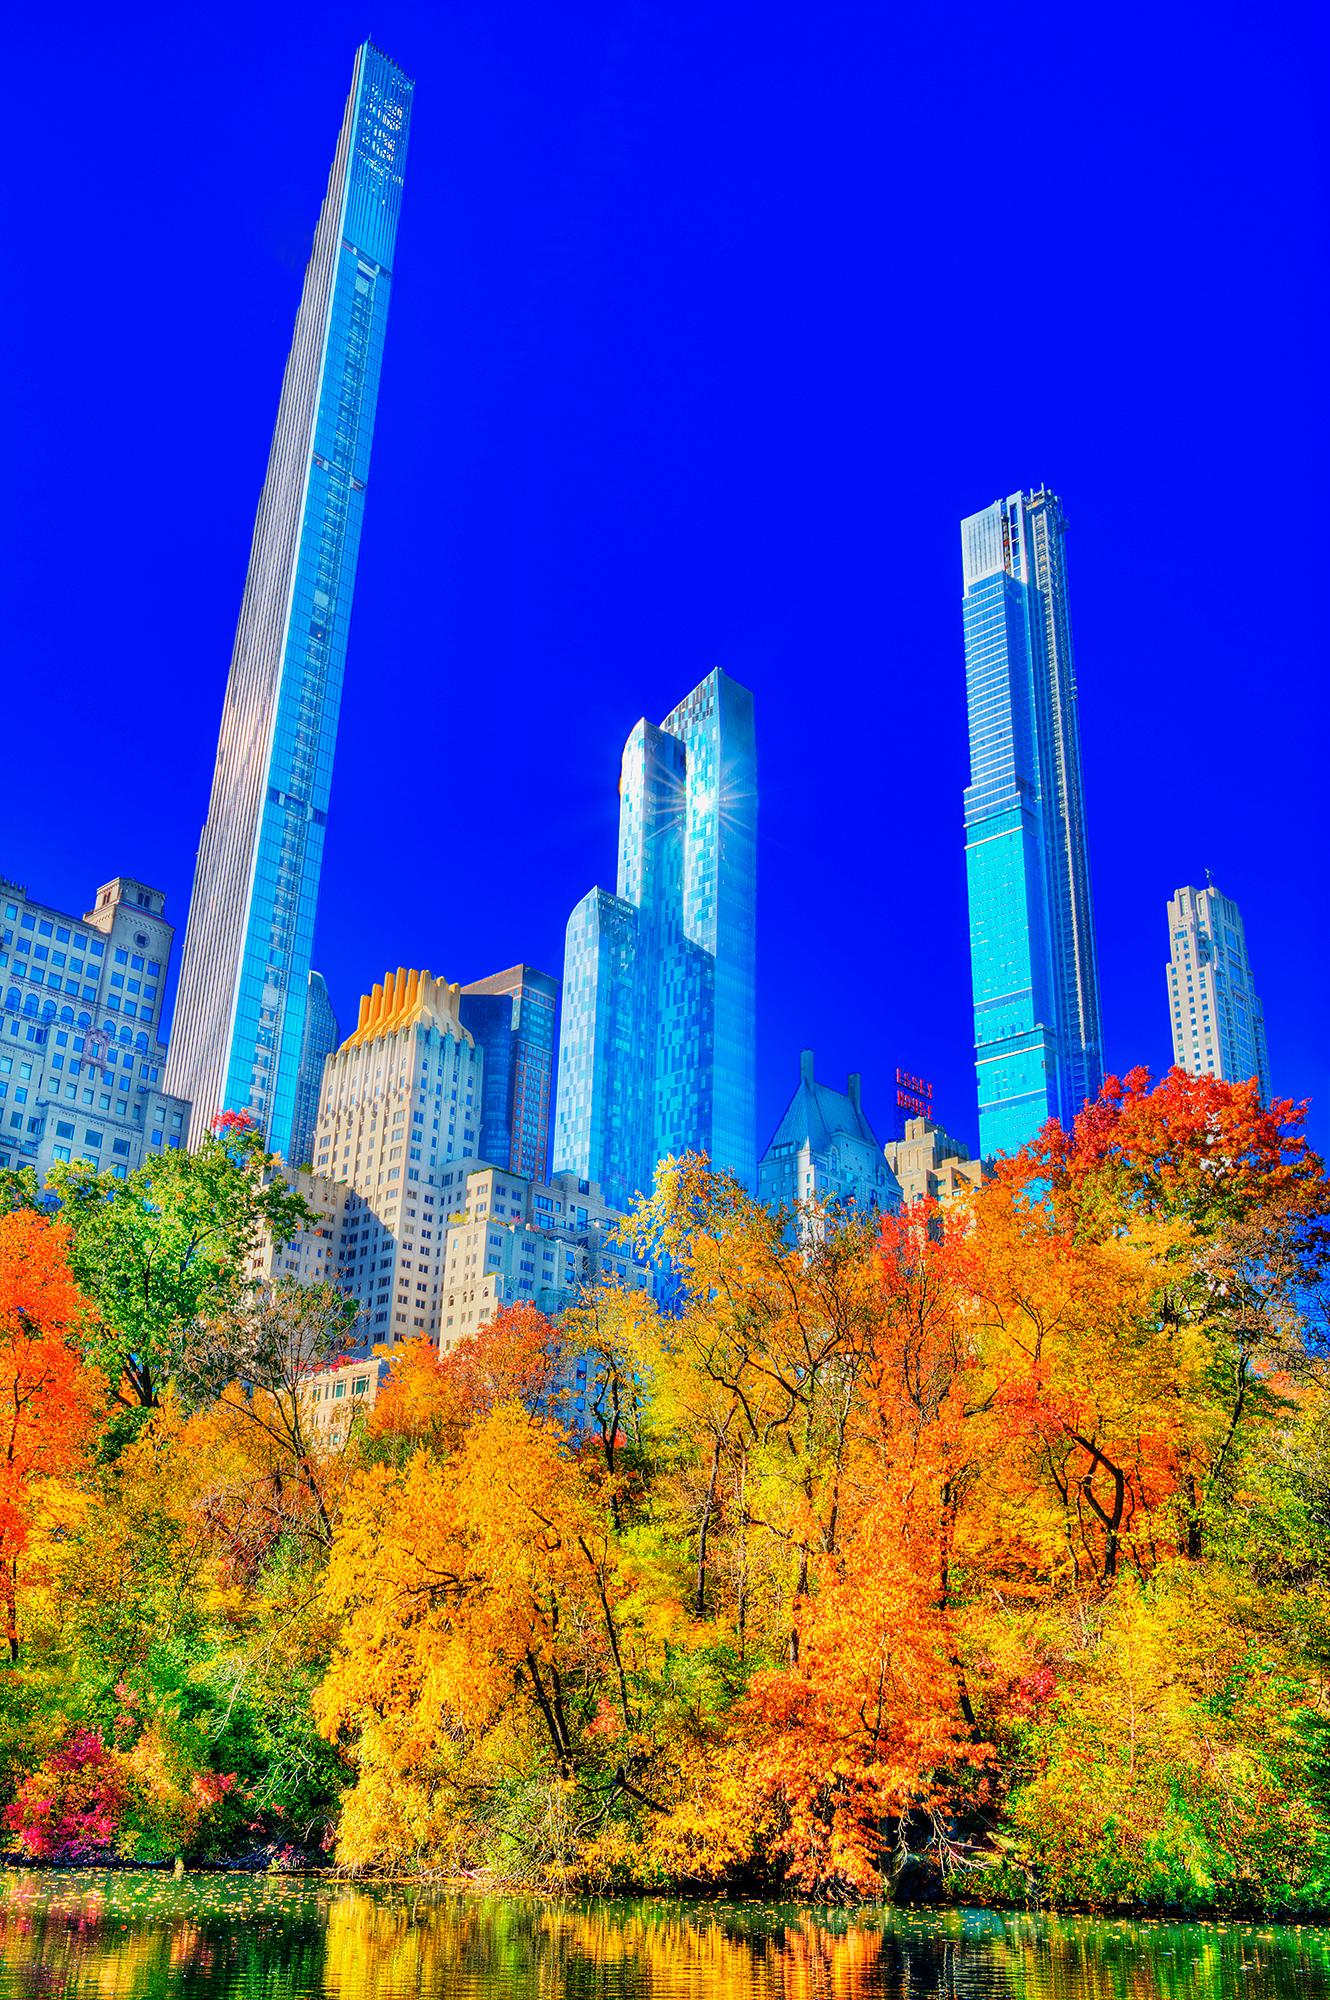  Central Park In Autumn With Billionaires Row Skyscrapers, avec des gratte-ciel. City surréaliste